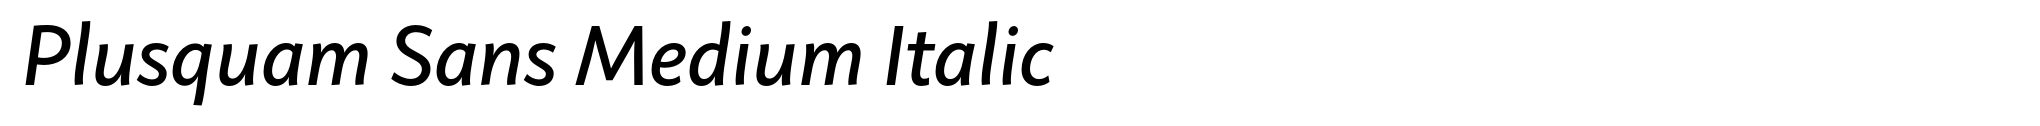 Plusquam Sans Medium Italic image